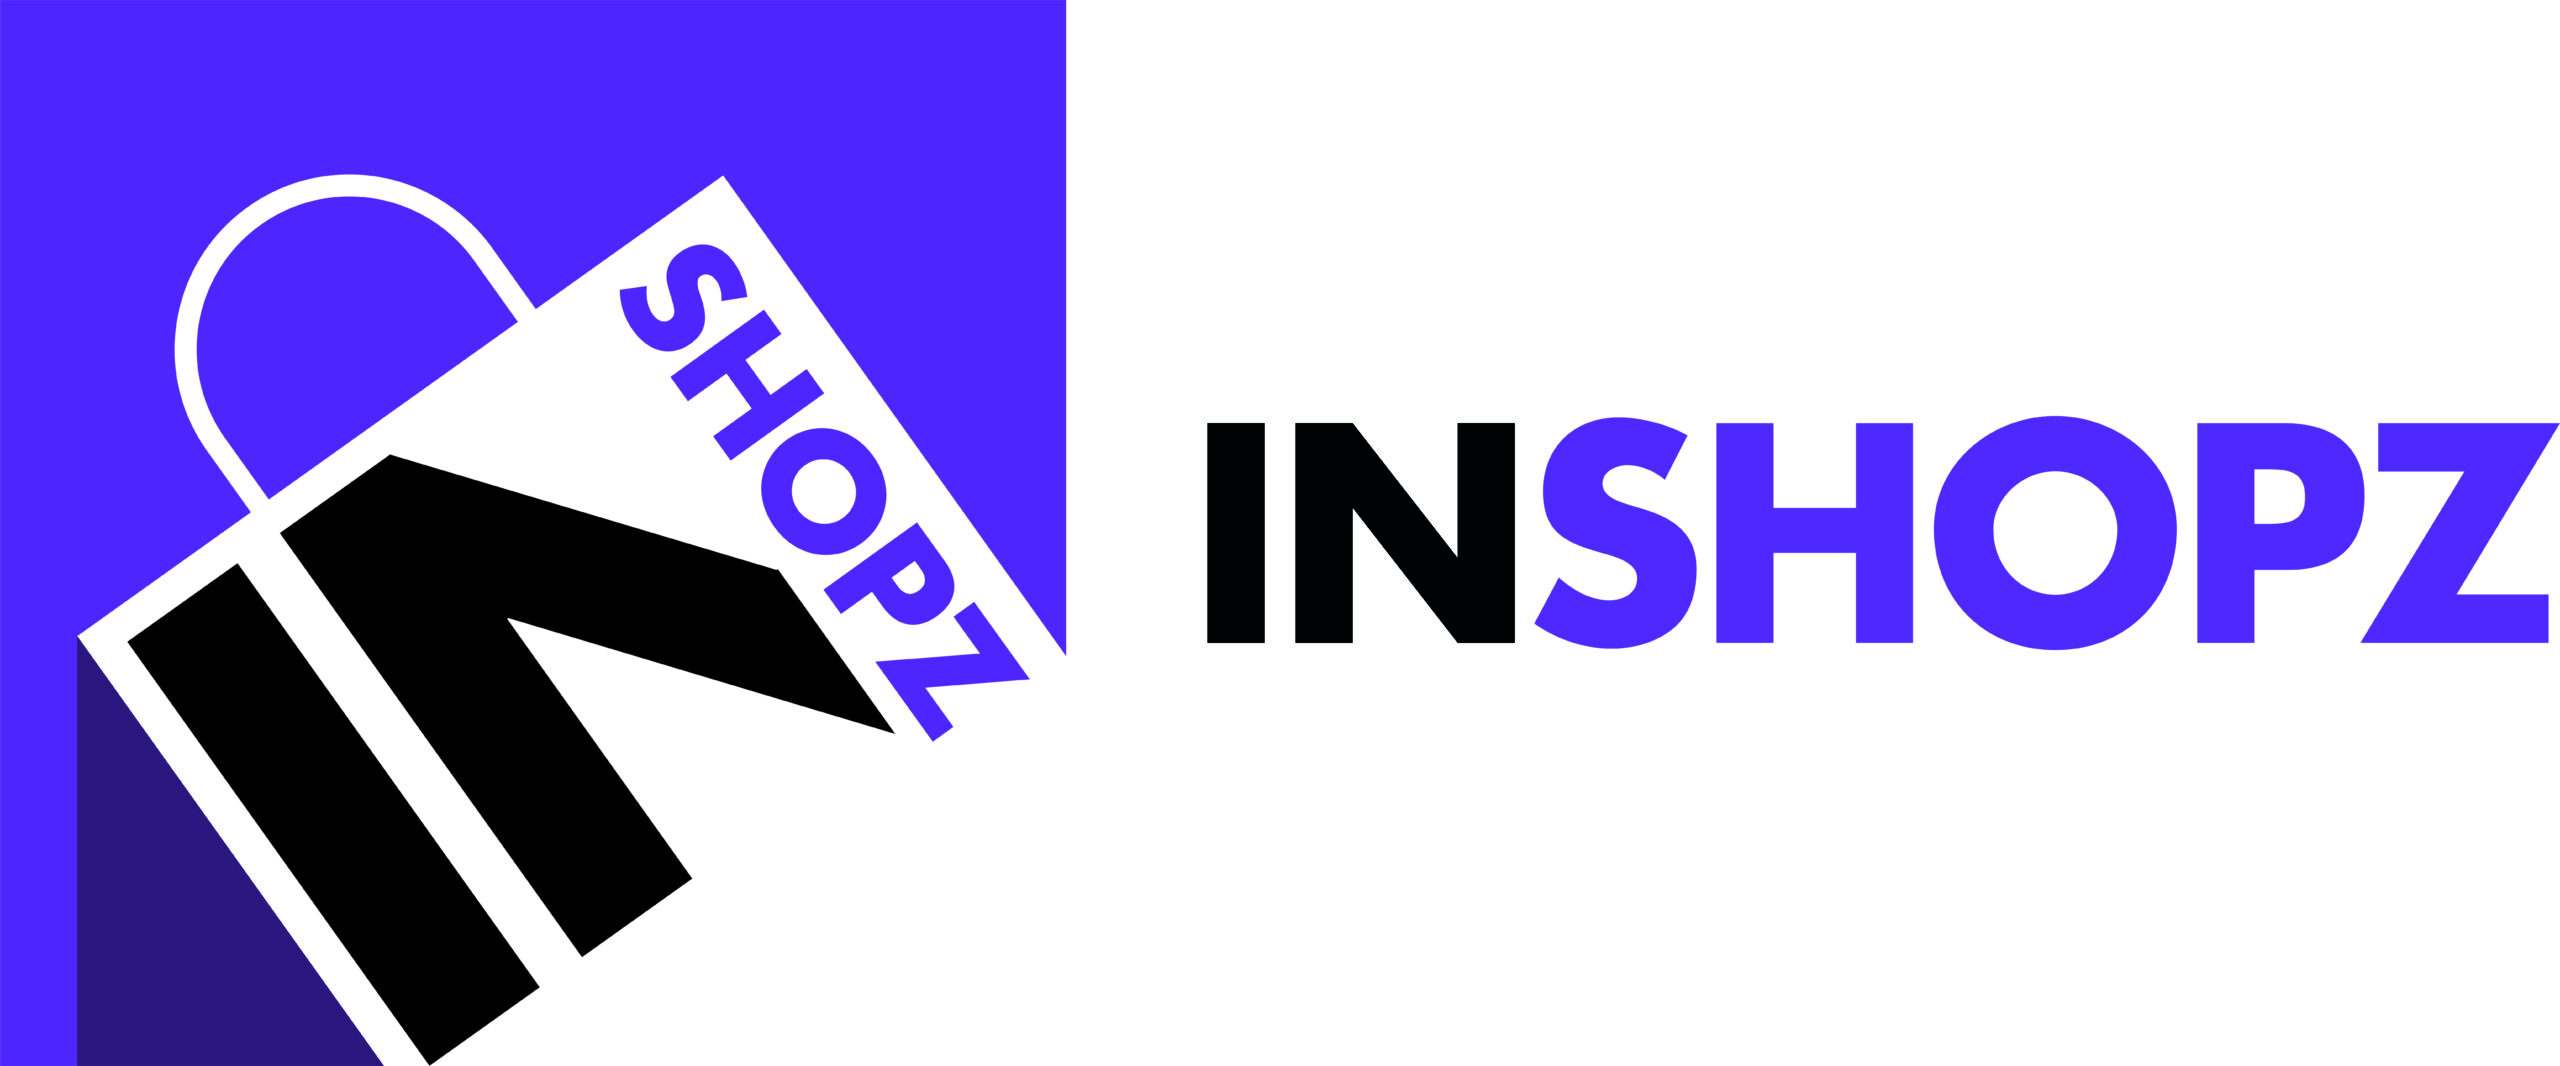 inshopz logo with words-min